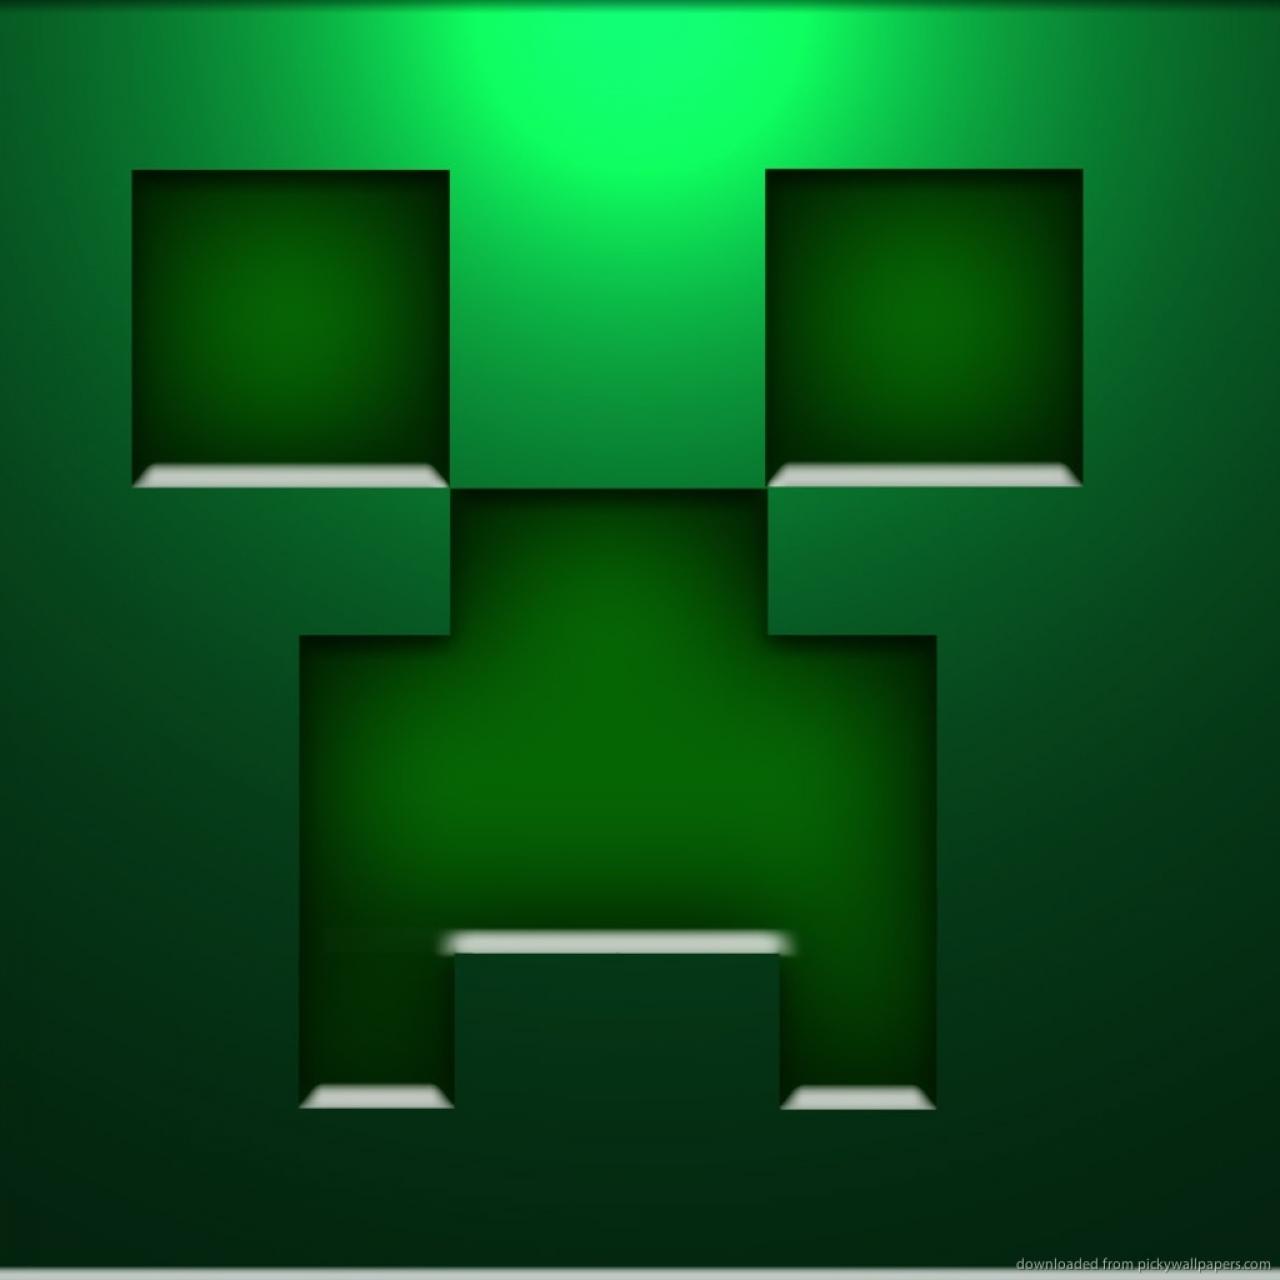 Icone di Minecraft 64x64